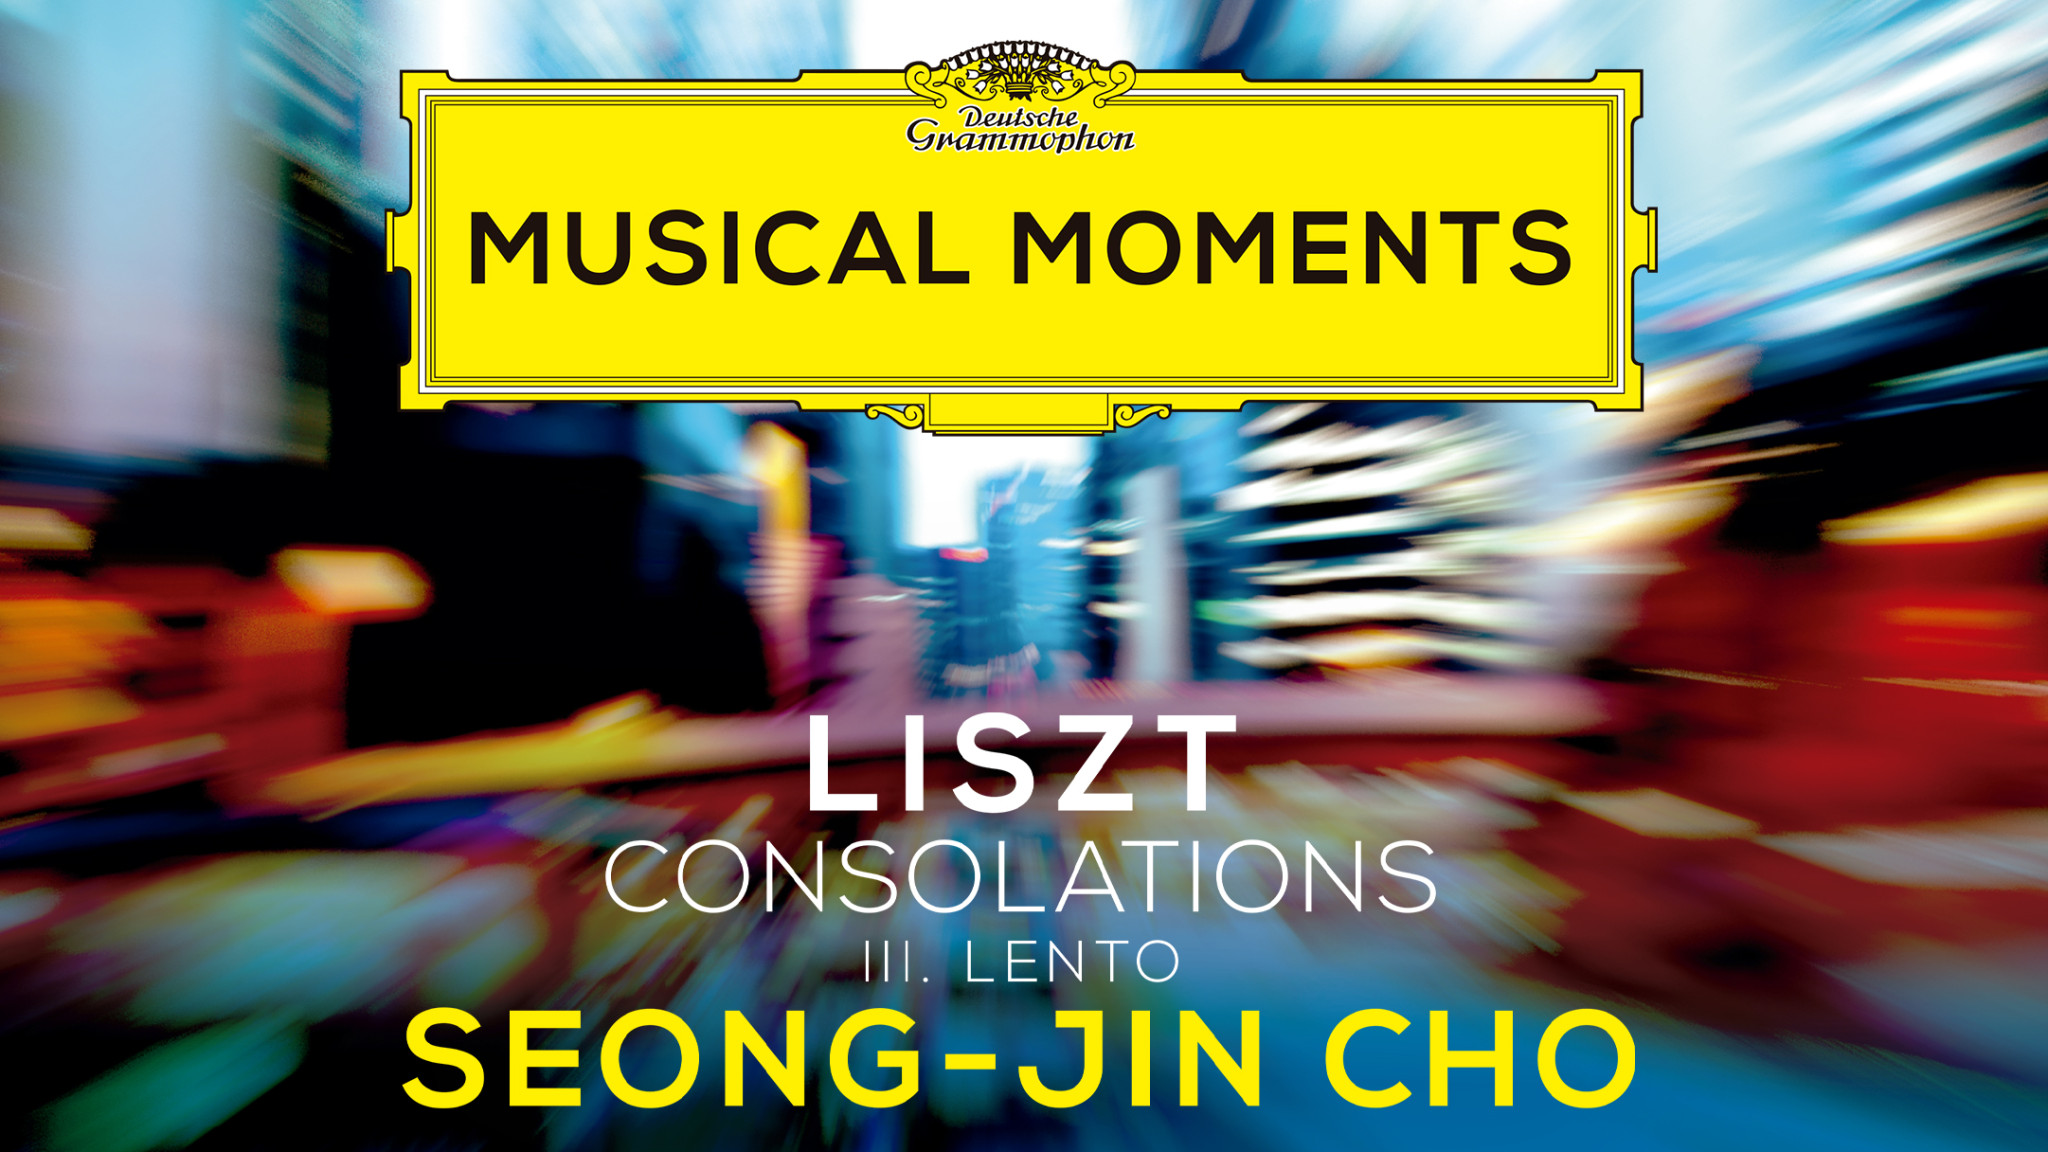 Seong-Jin Cho Consolations Musical Moments